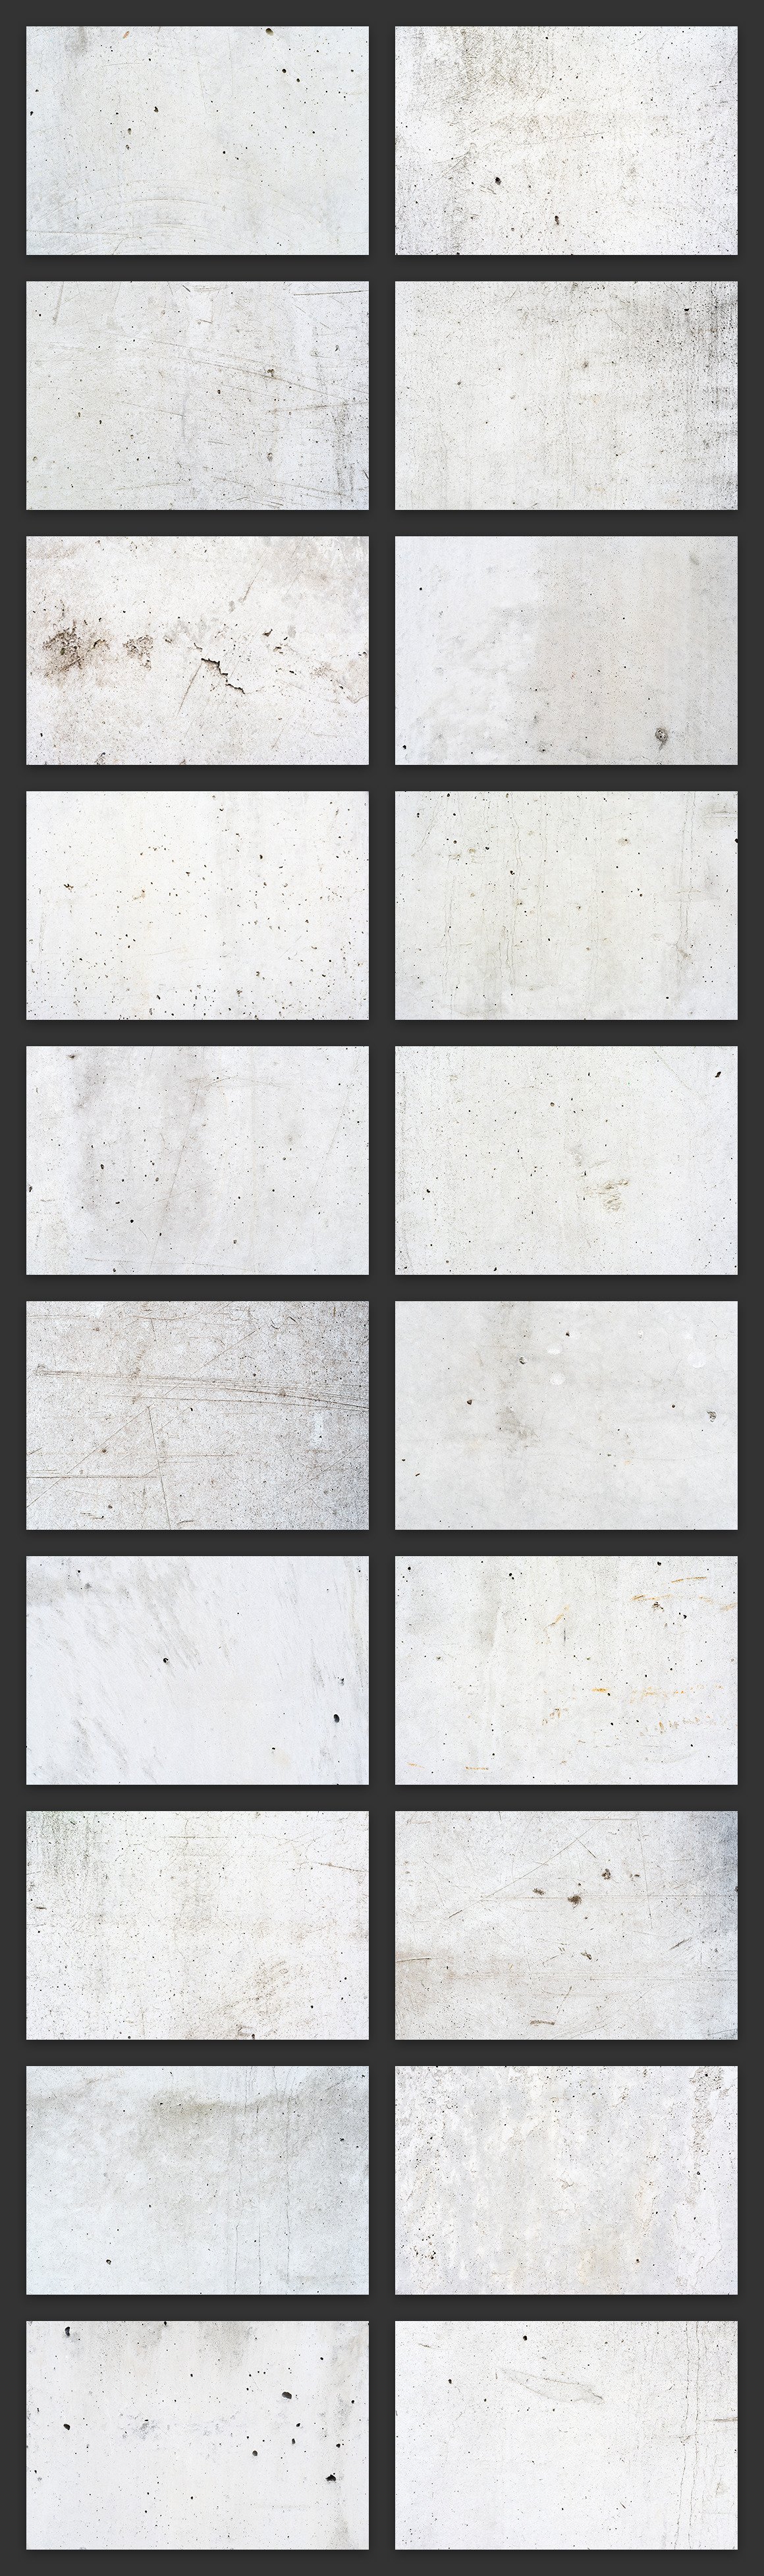 100 Concrete Wall Textures Bundle preview image.